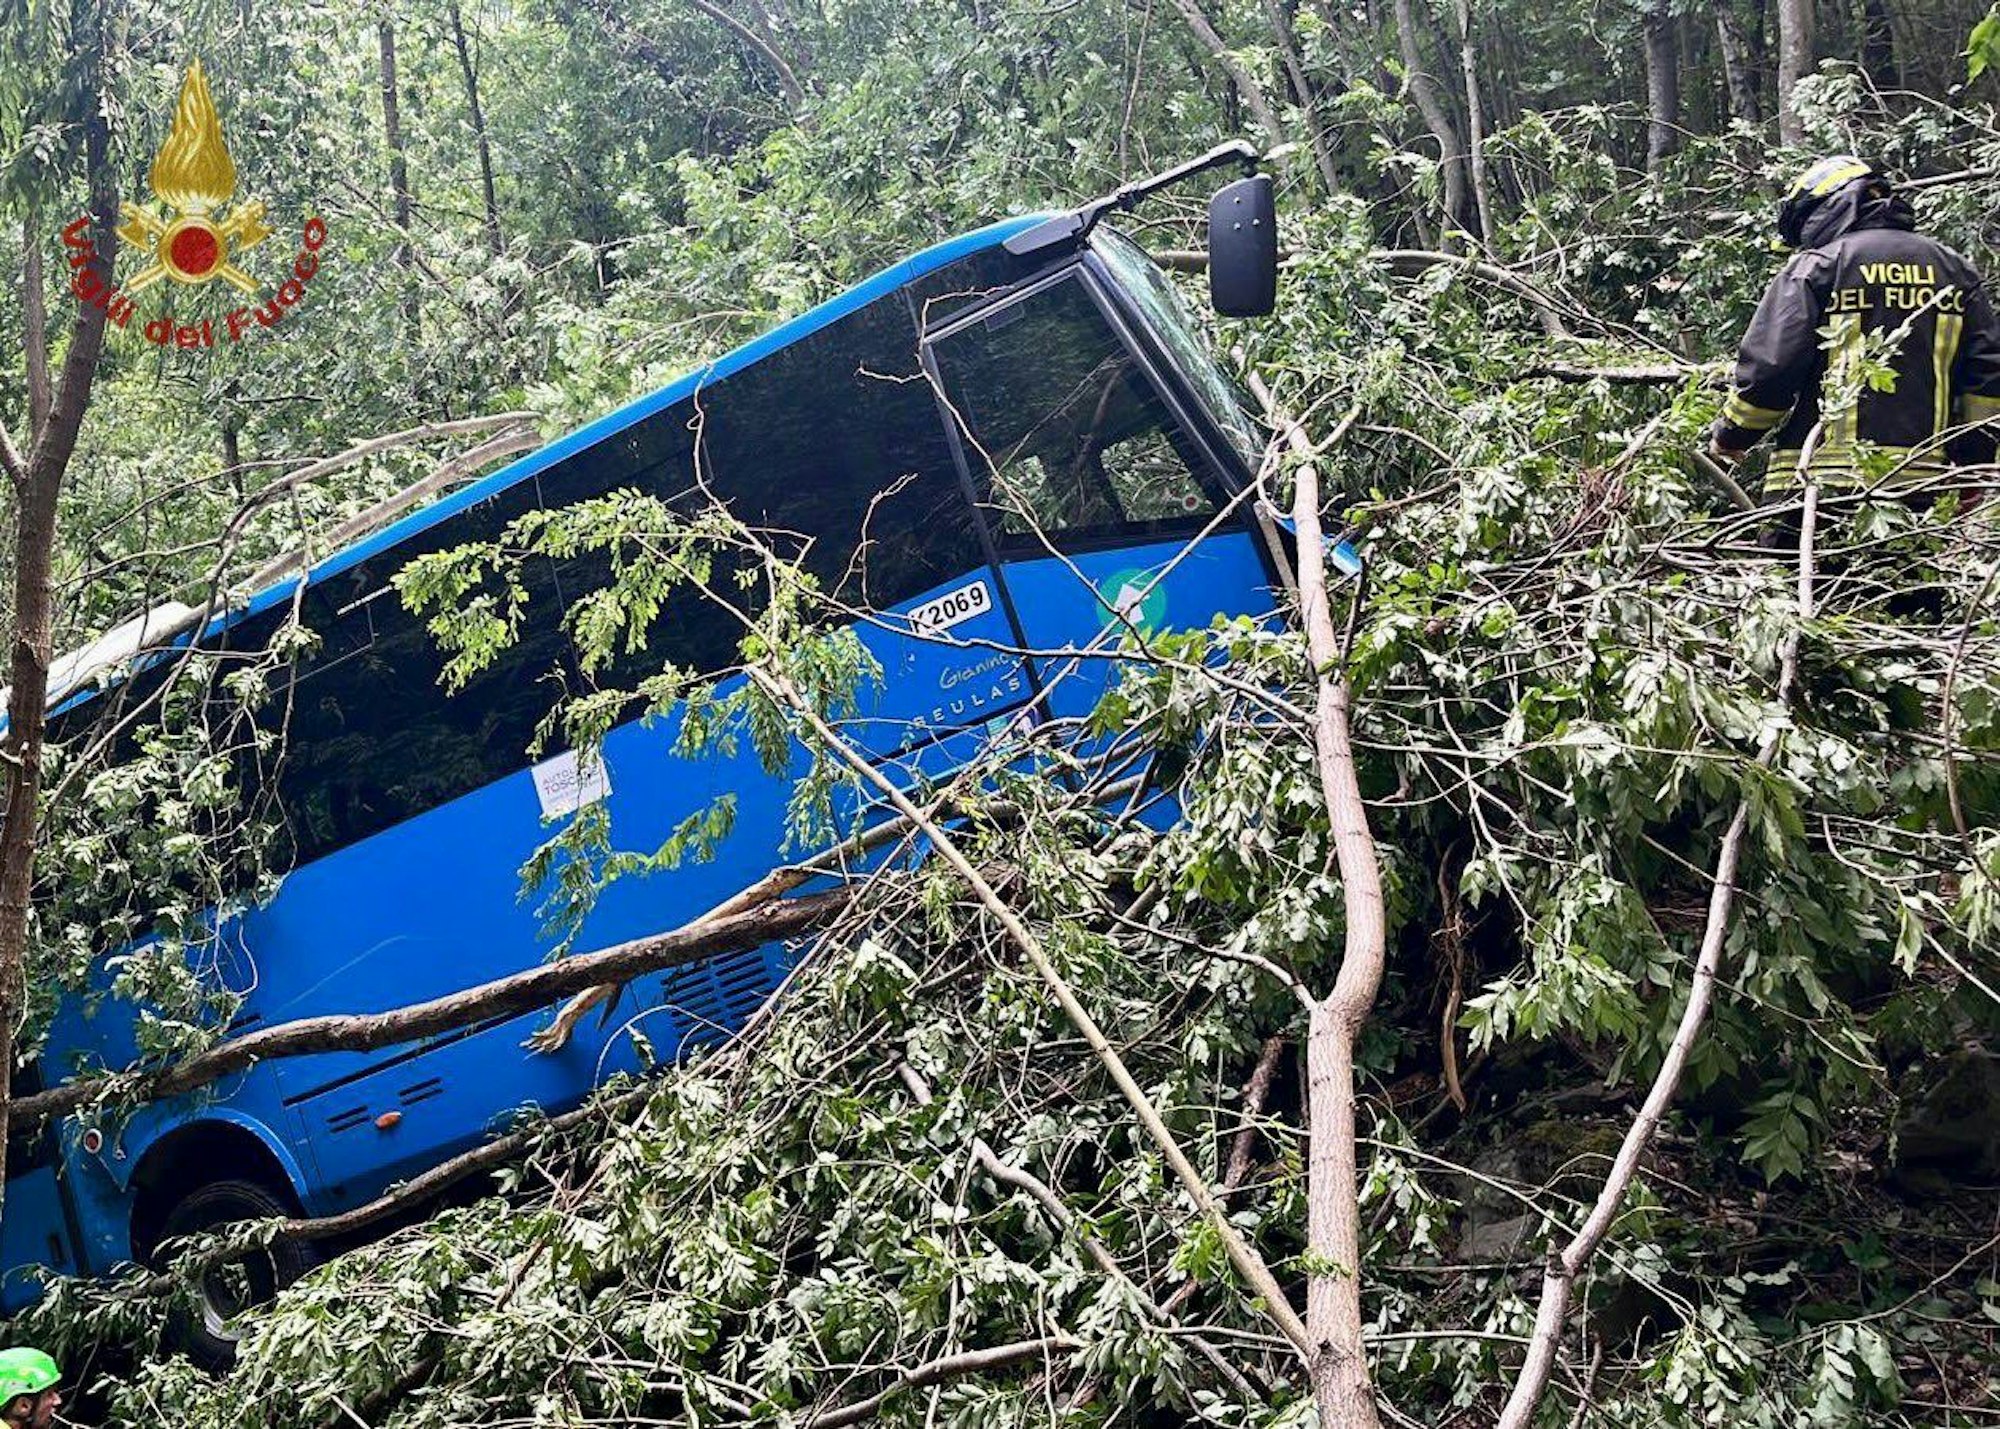 Italien, Massa Carrara: Bei einem Busunfall in Italien sind mindestens drei Menschen verletzt worden, darunter zwei Schüler.